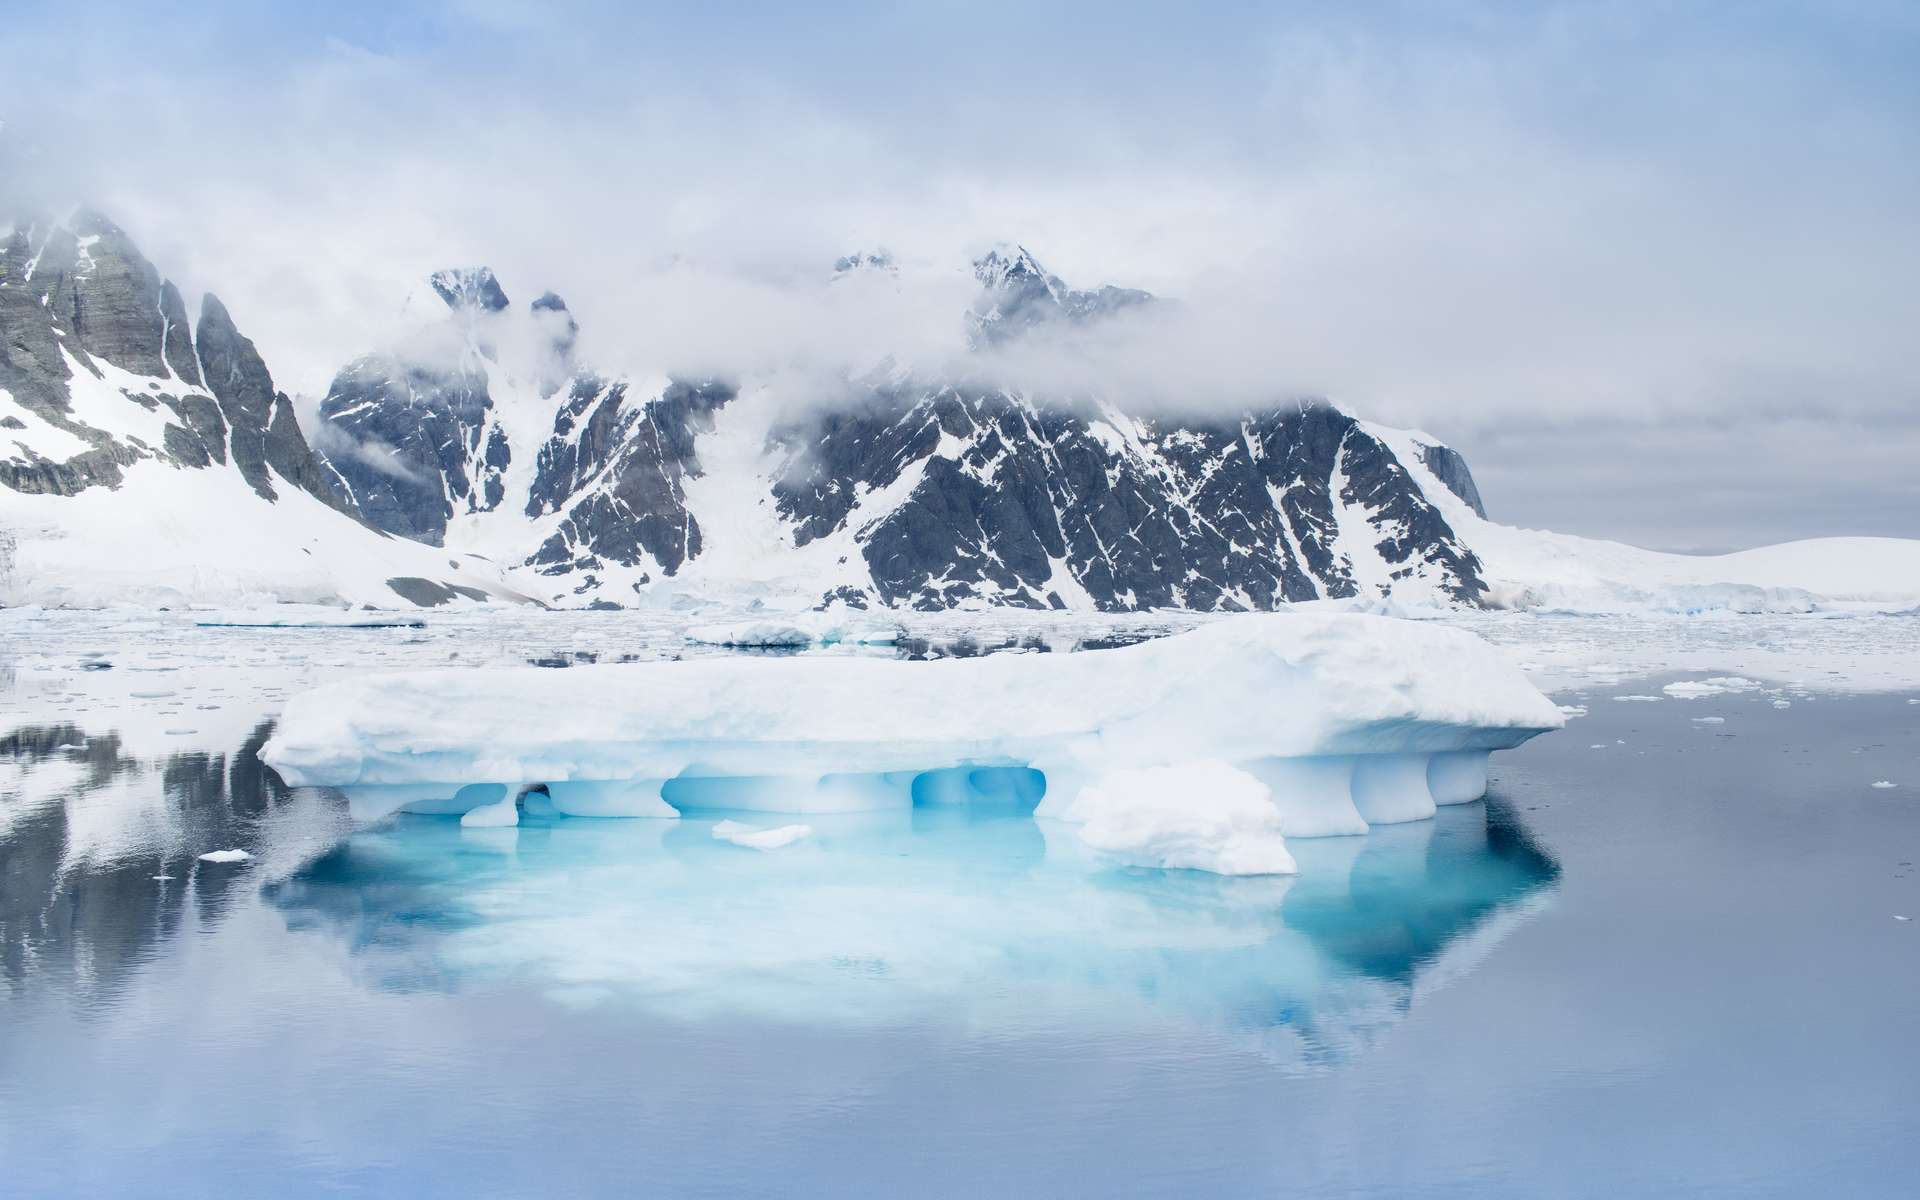 Comprendre l'histoire géologique de l'Antarctique, continent de glace encore peu exploré, pourrait permettre d'en apprendre plus sur la formation des continents autour du globe. © Iurii Sokolov, Adobe Stock